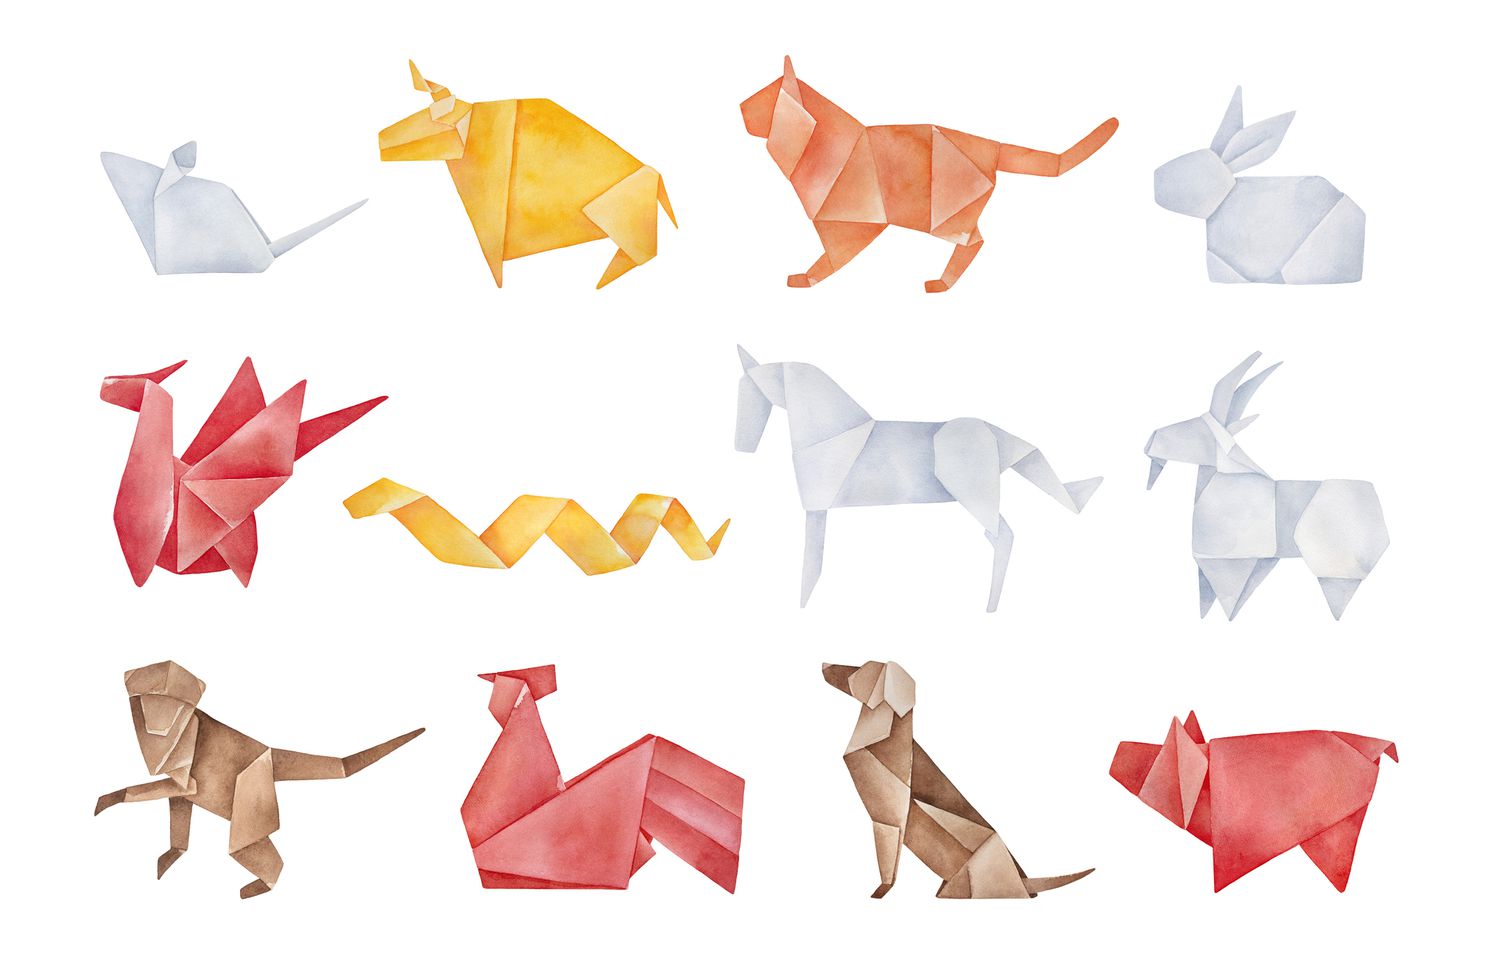 Pacote de origami dobrado com doze animais tradicionais do zodíaco chinês. Cores vermelho, amarelo, marrom, laranja e cinza claro. Desenho gráfico em aquarela feito à mão